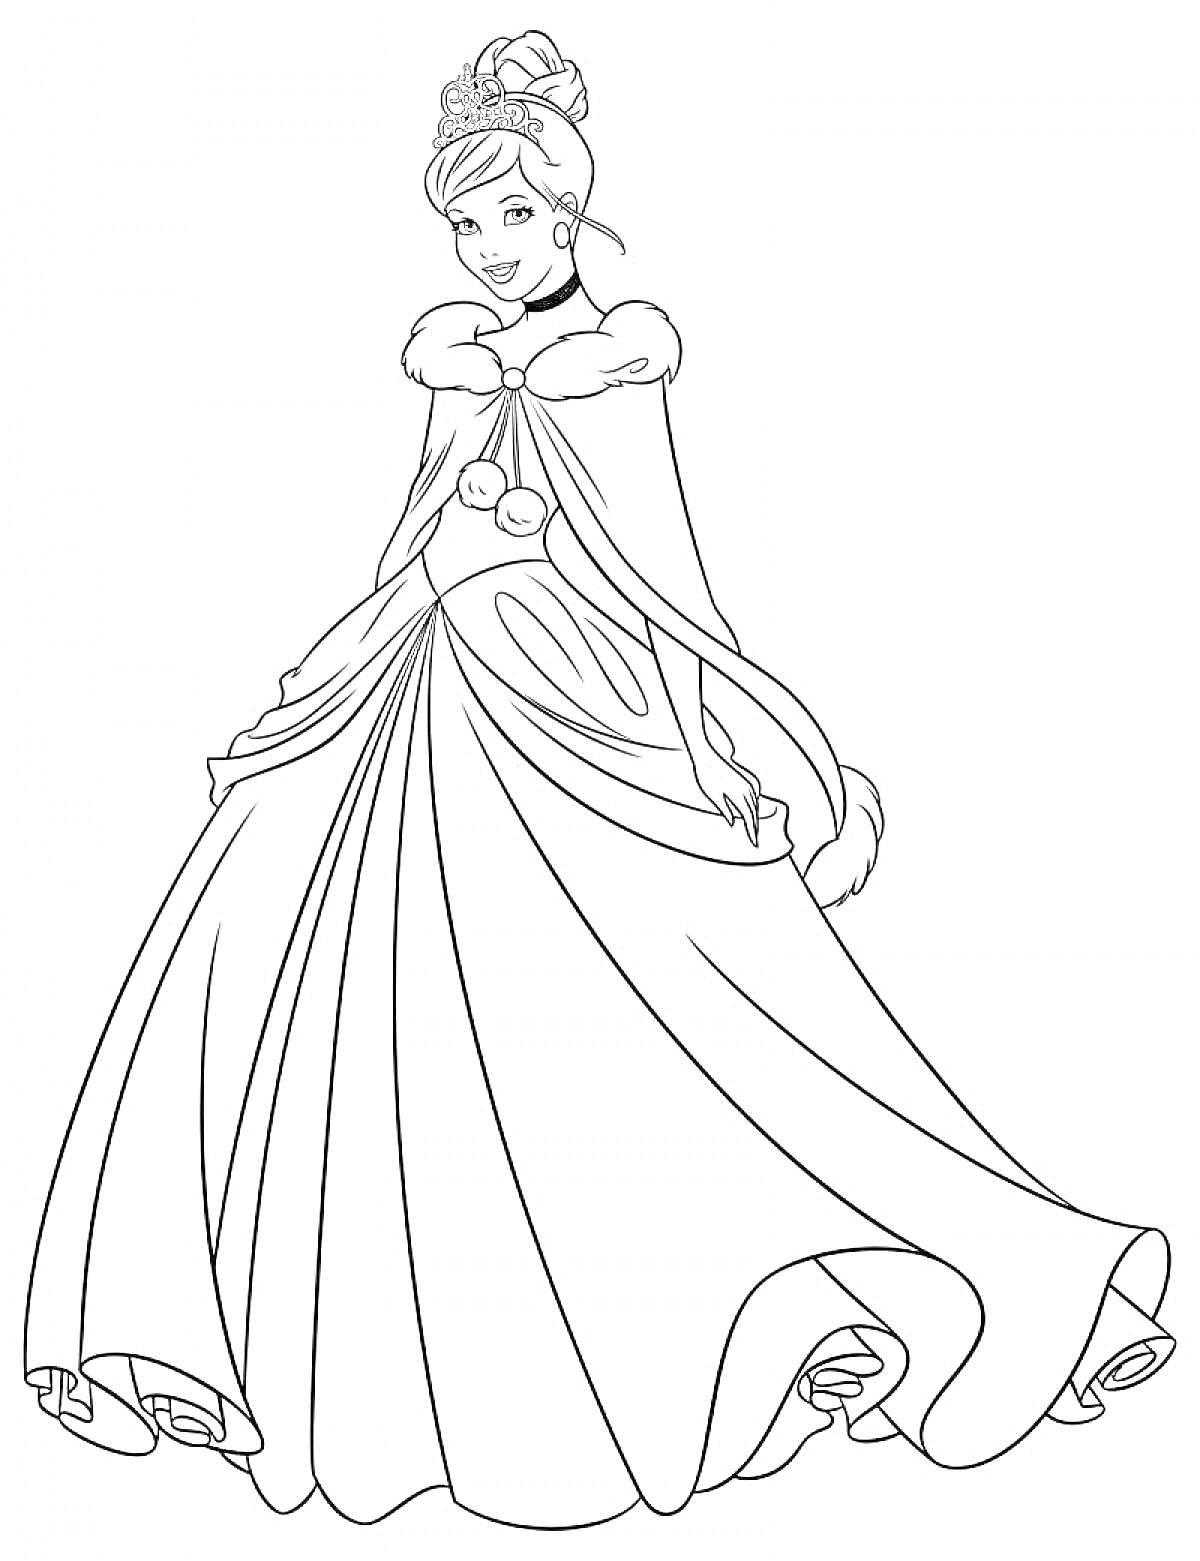 Принцесса в роскошном платье с меховой накидкой